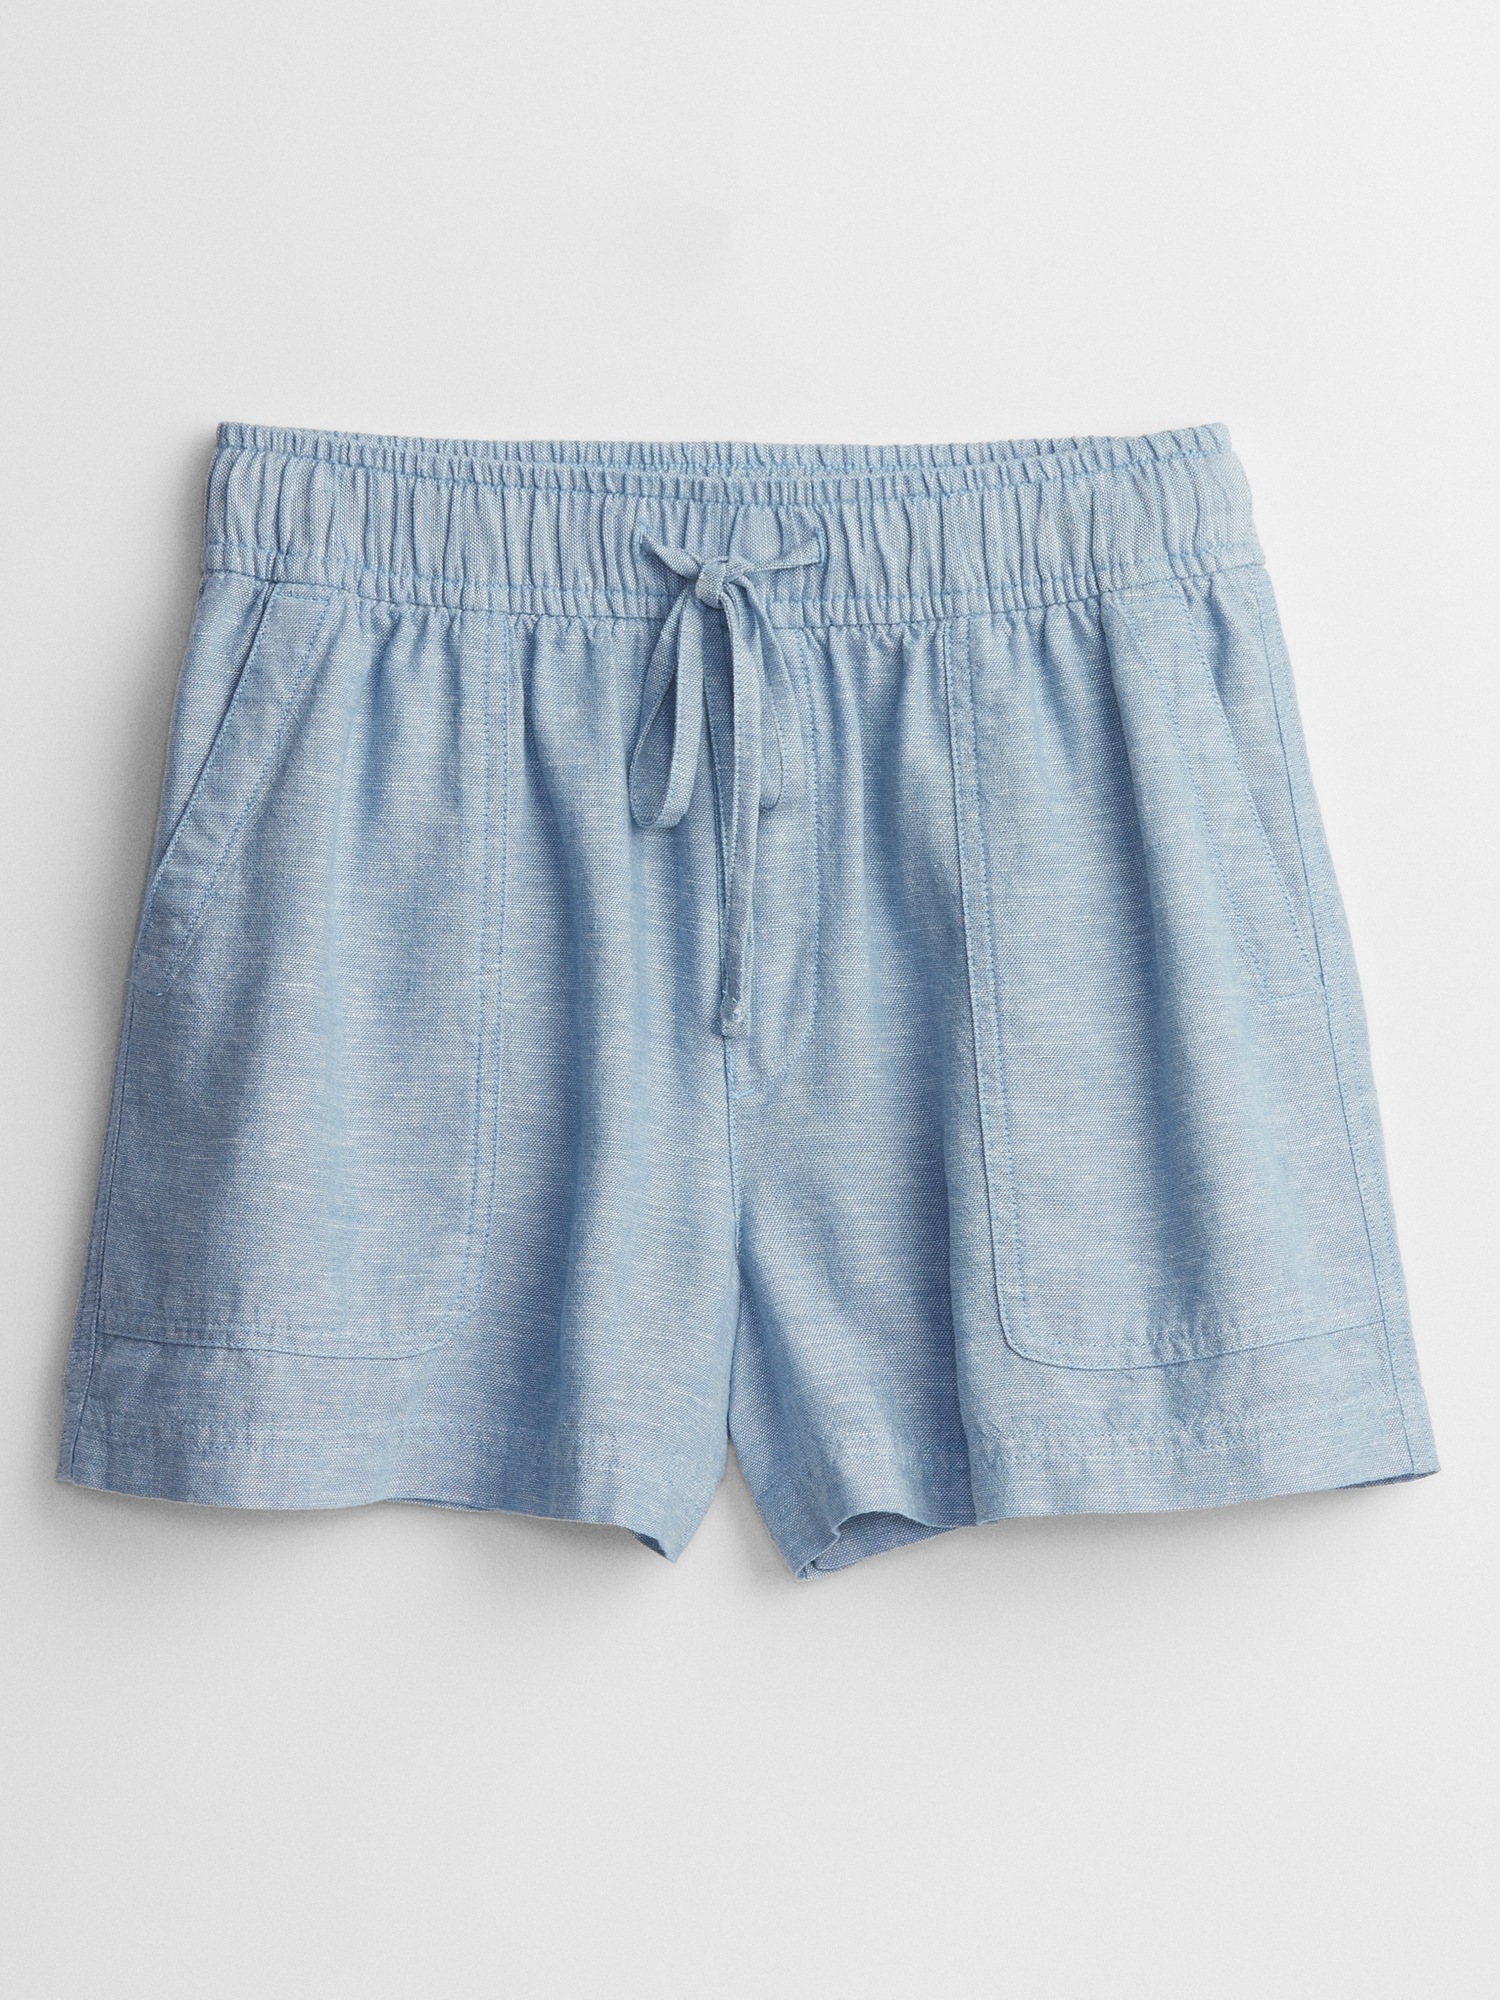 oversized gray tee, drawstring waist chambray shorts J. Crew